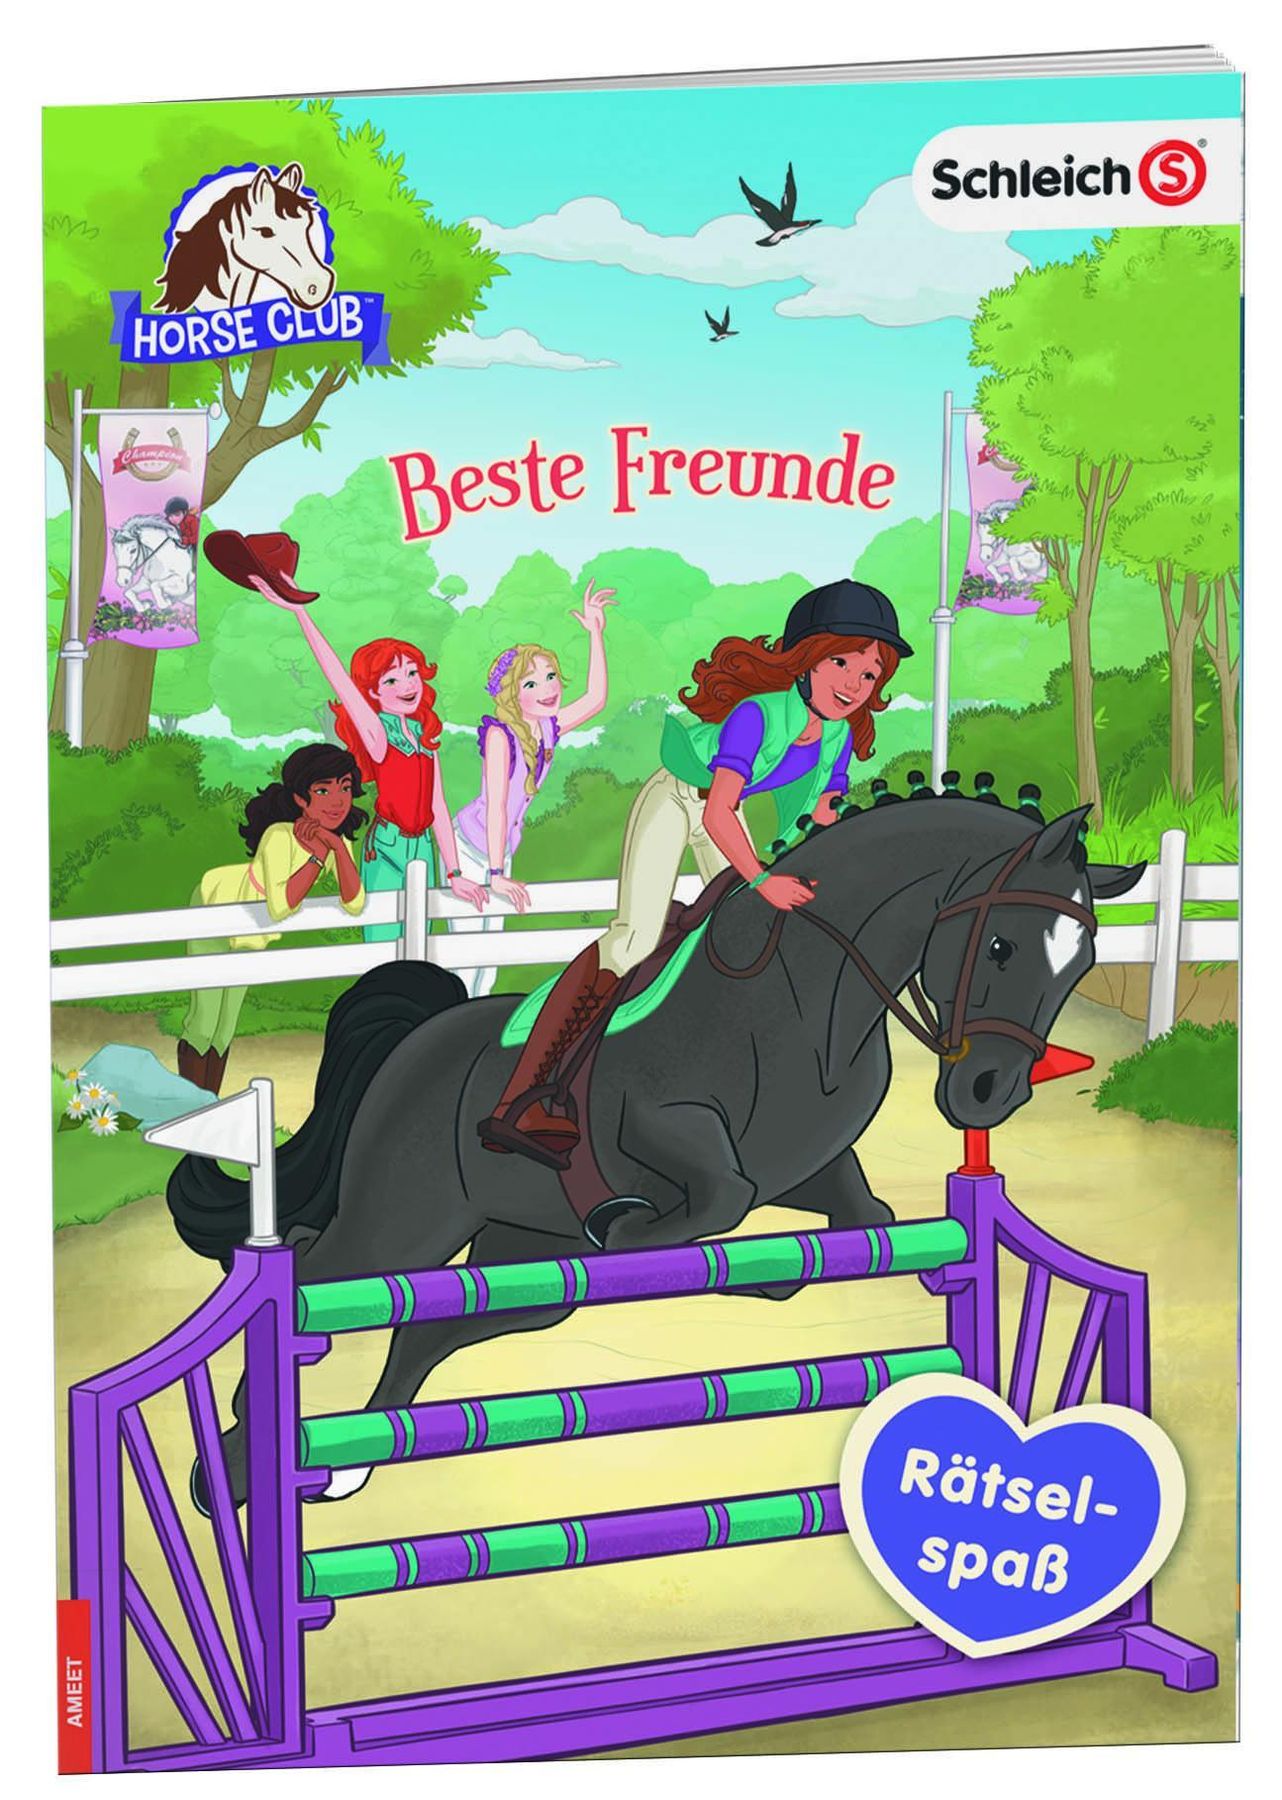 Schleich Horse Club - Box für Pferdefreunde, 2 Bücher + Figur Buch  versandkostenfrei bei Weltbild.at bestellen